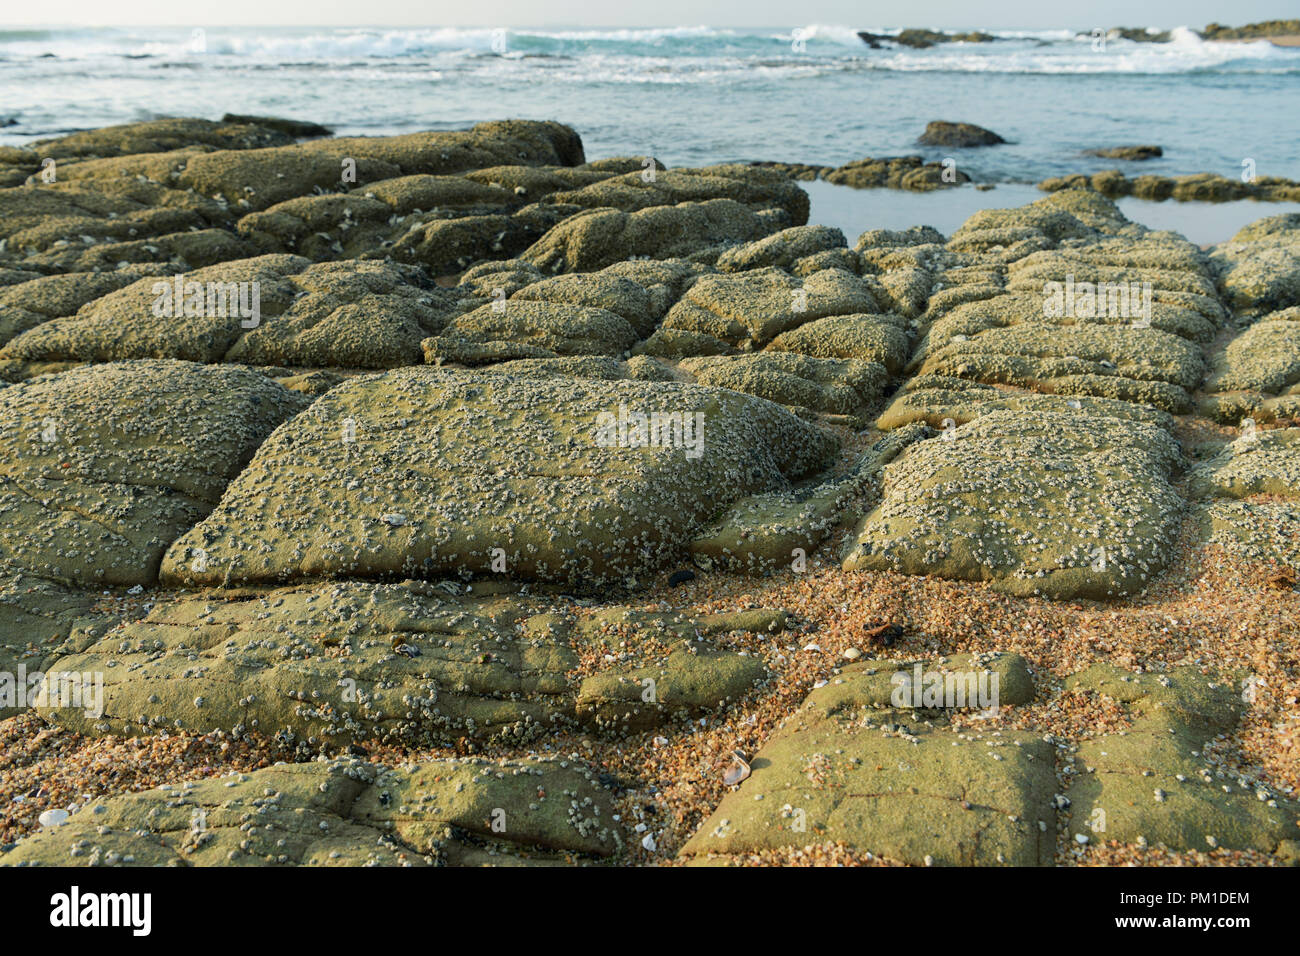 Tôt le matin, la lumière du soleil tombant sur les rochers couverts de balanes, et la vie dans la zone de marée à la conservation marine, Durban, Afrique du Sud Banque D'Images